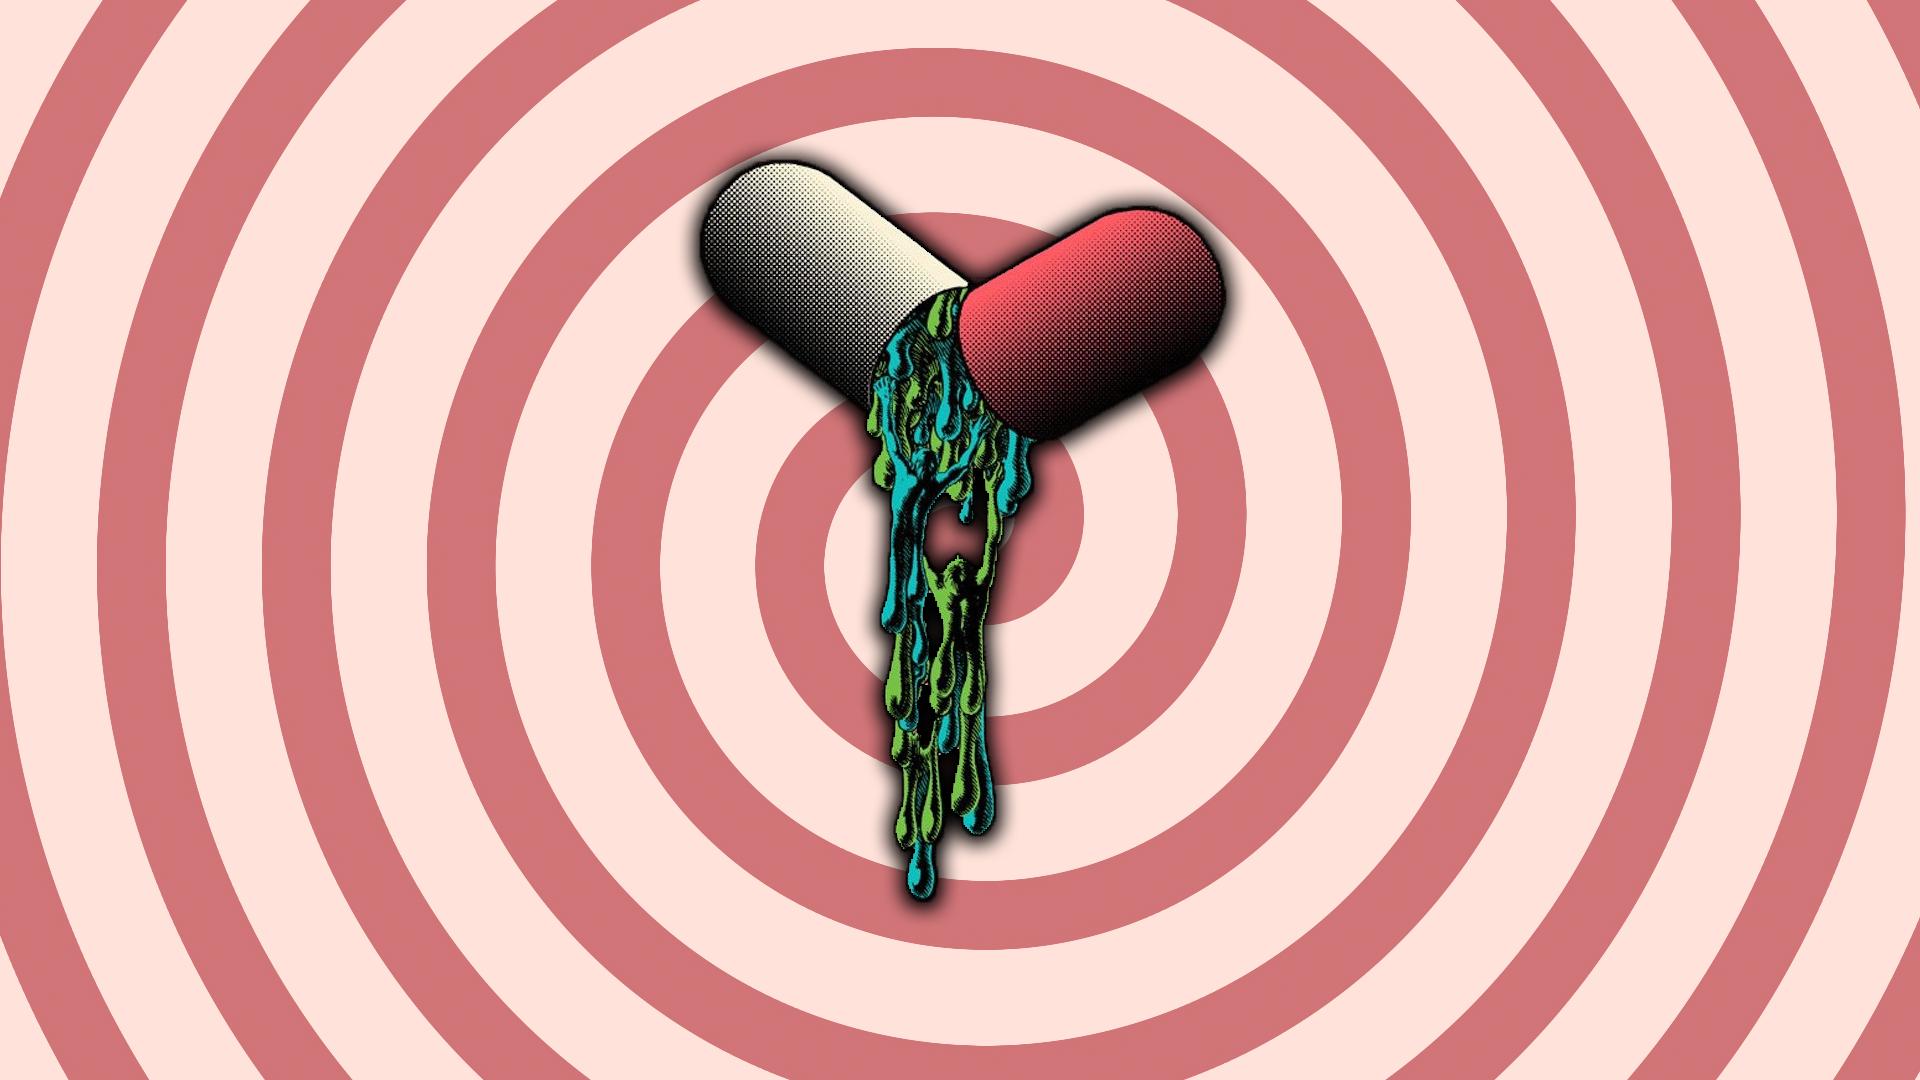 HD wallpaper, Pills, Drugs, Artwork, Spiral